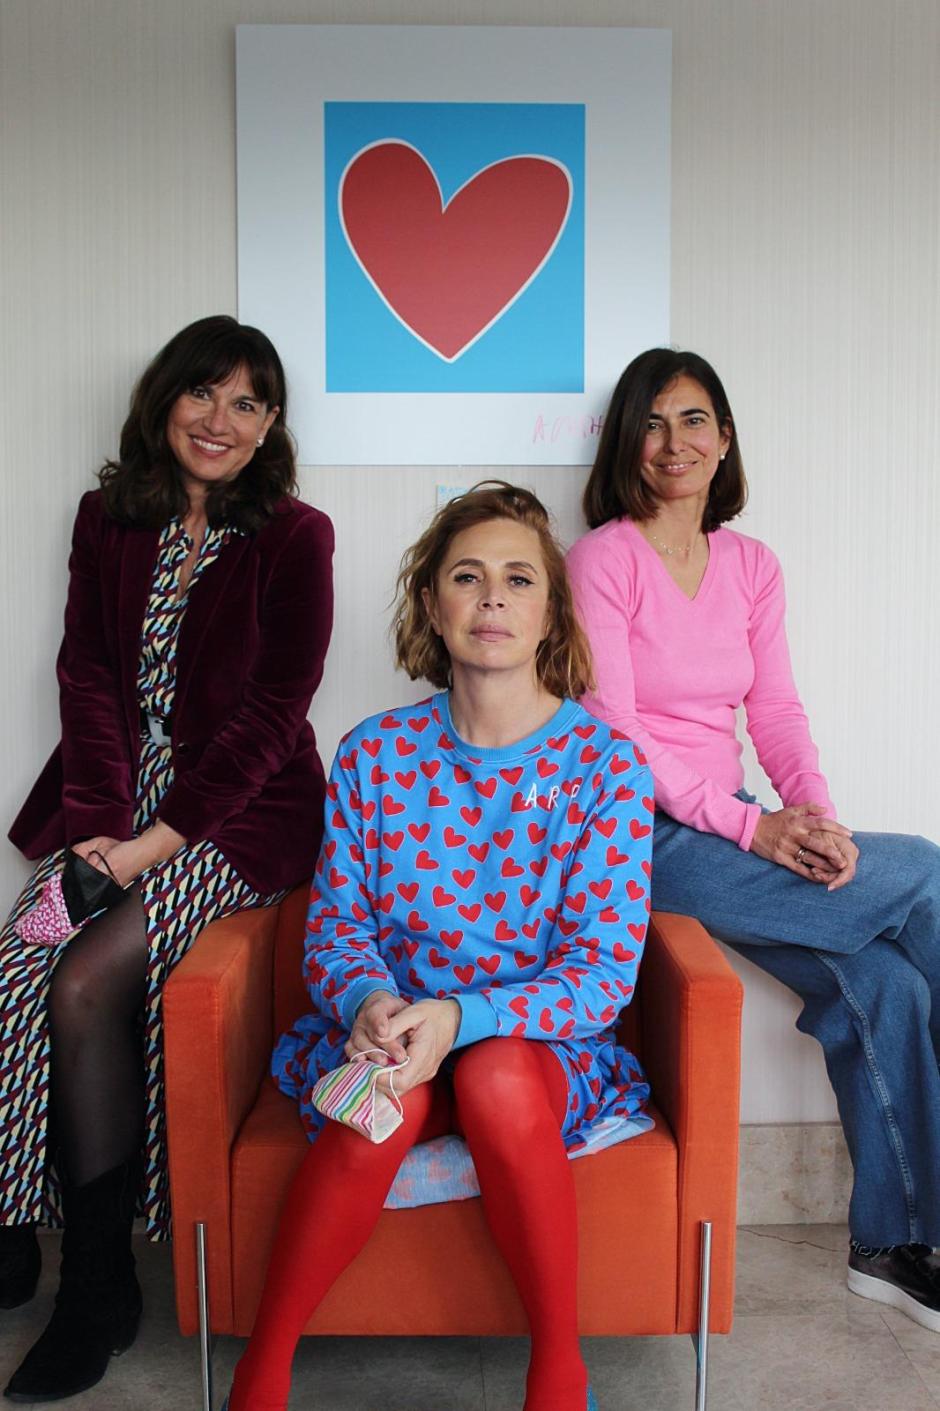 Tamara Kreisler y Silvia Centeno con Agatha Ruiz de la Prada. El hospital Universitario San Rafael (Madrid) cuenta con una exposición permanente de la artista y diseñadora en la sala de espera de pediatría